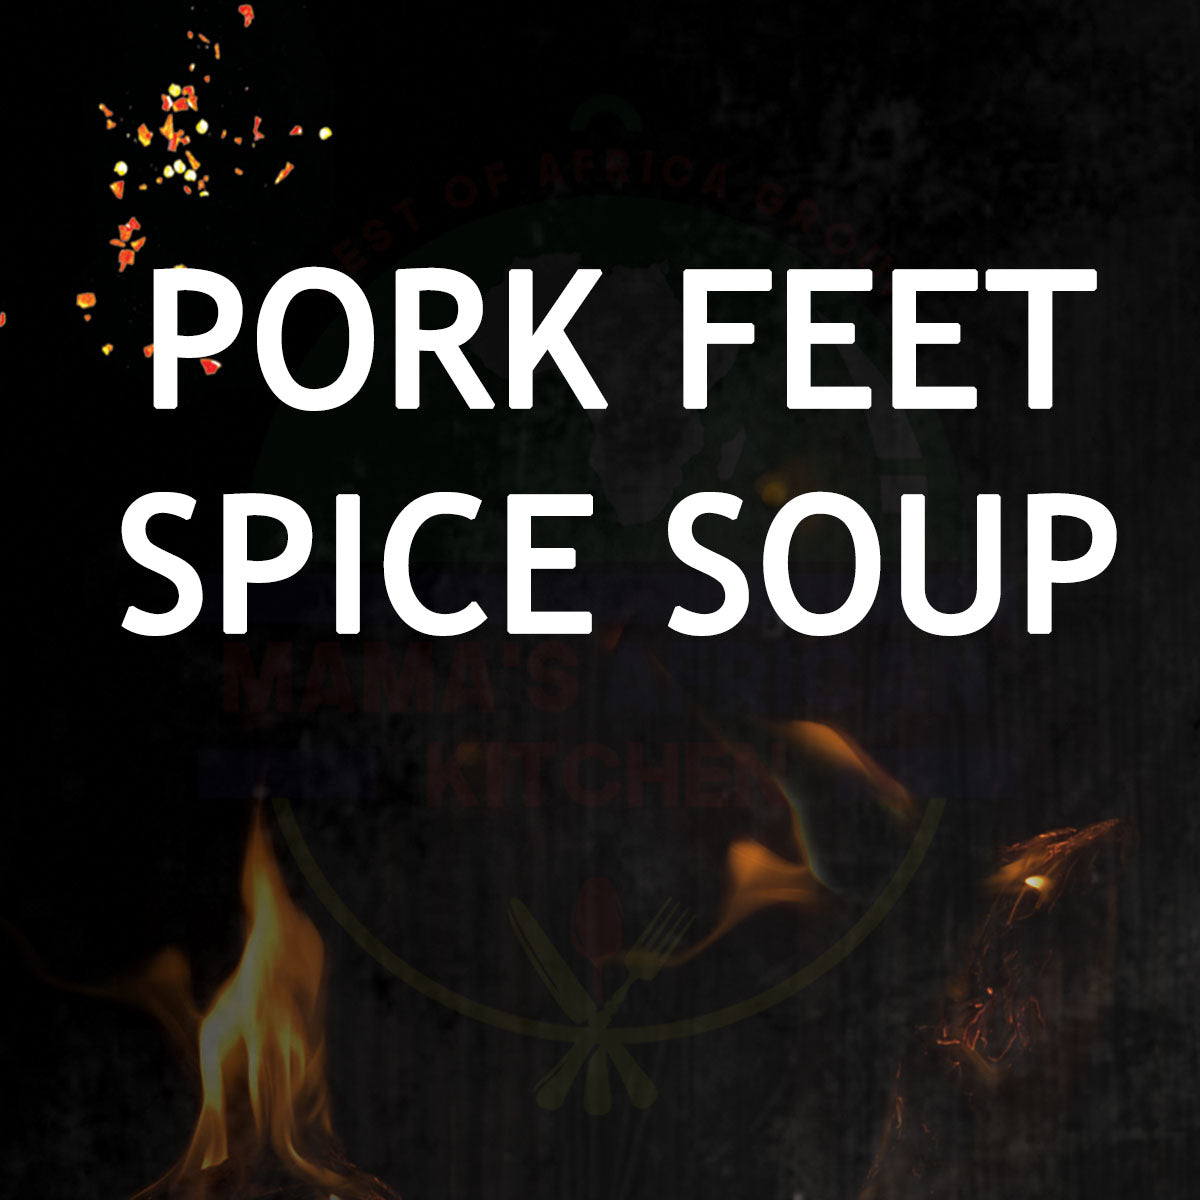 Pork Feet Spice Soup Makoso